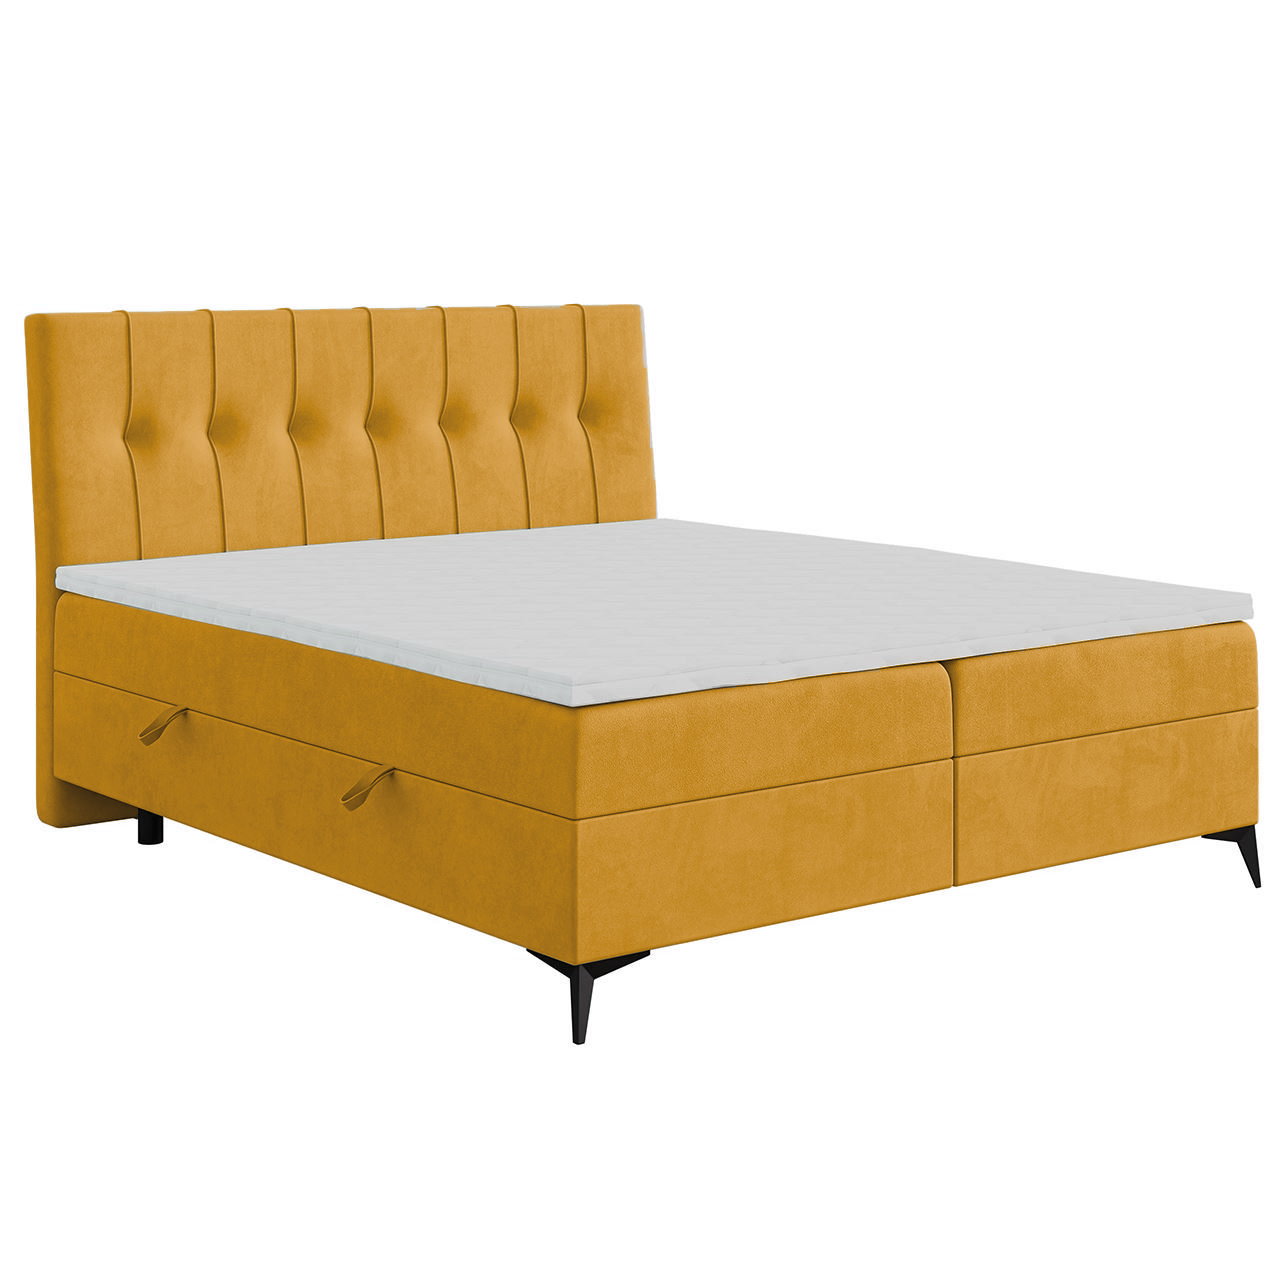 Upholstered bed LIME 160x200 magic velvet 2215